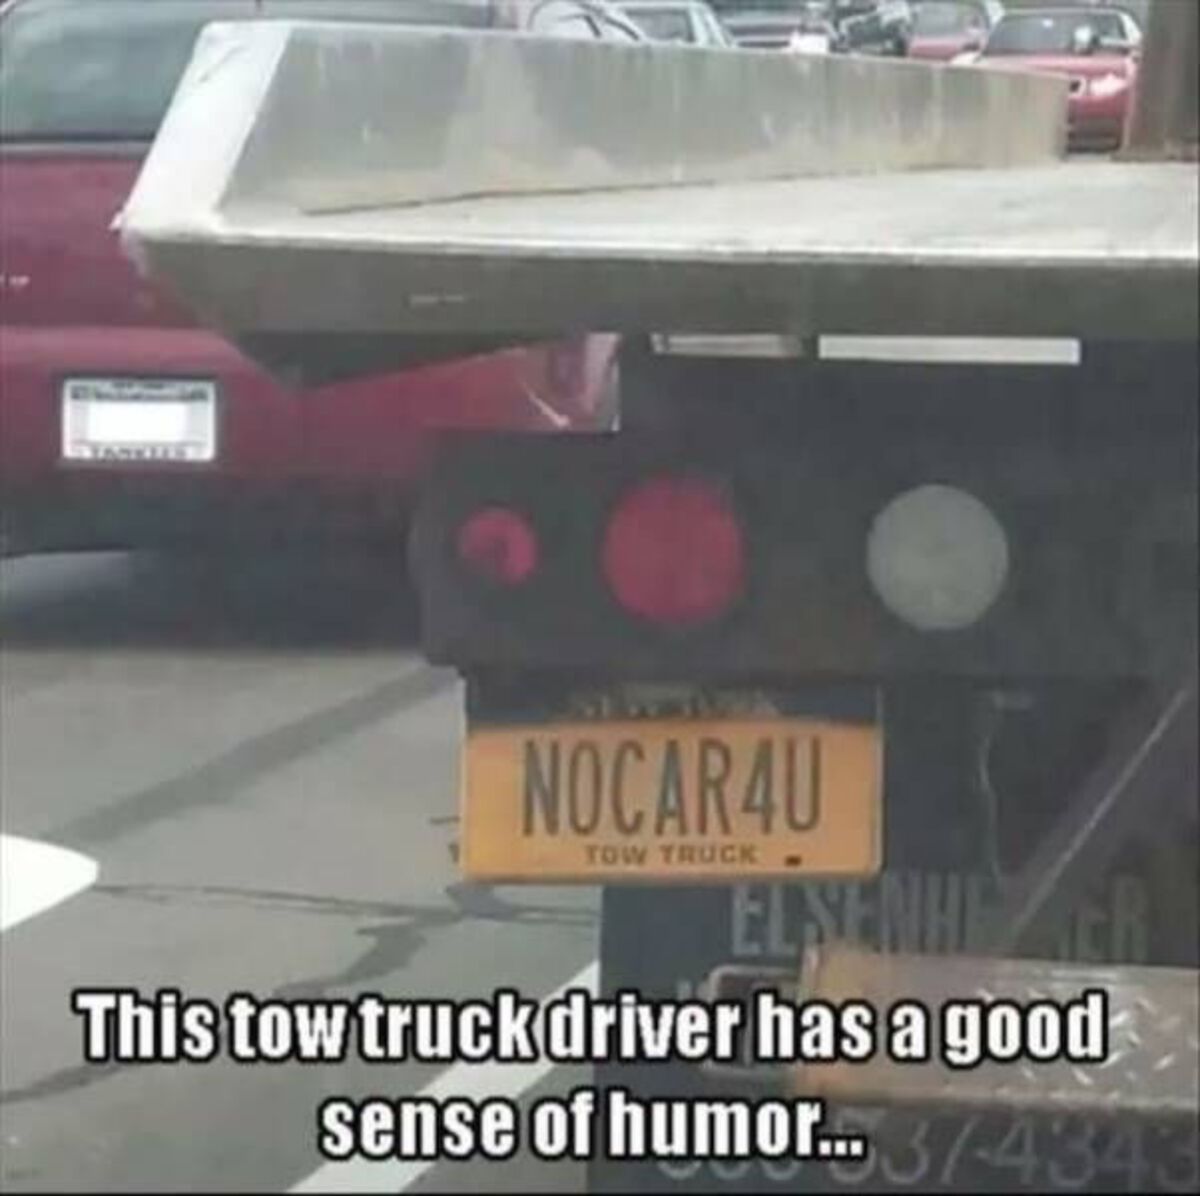 tow truck meme - Statites NOCAR4U Tow Truck Elsenhi This tow truck driver has a good sense of humor...34343